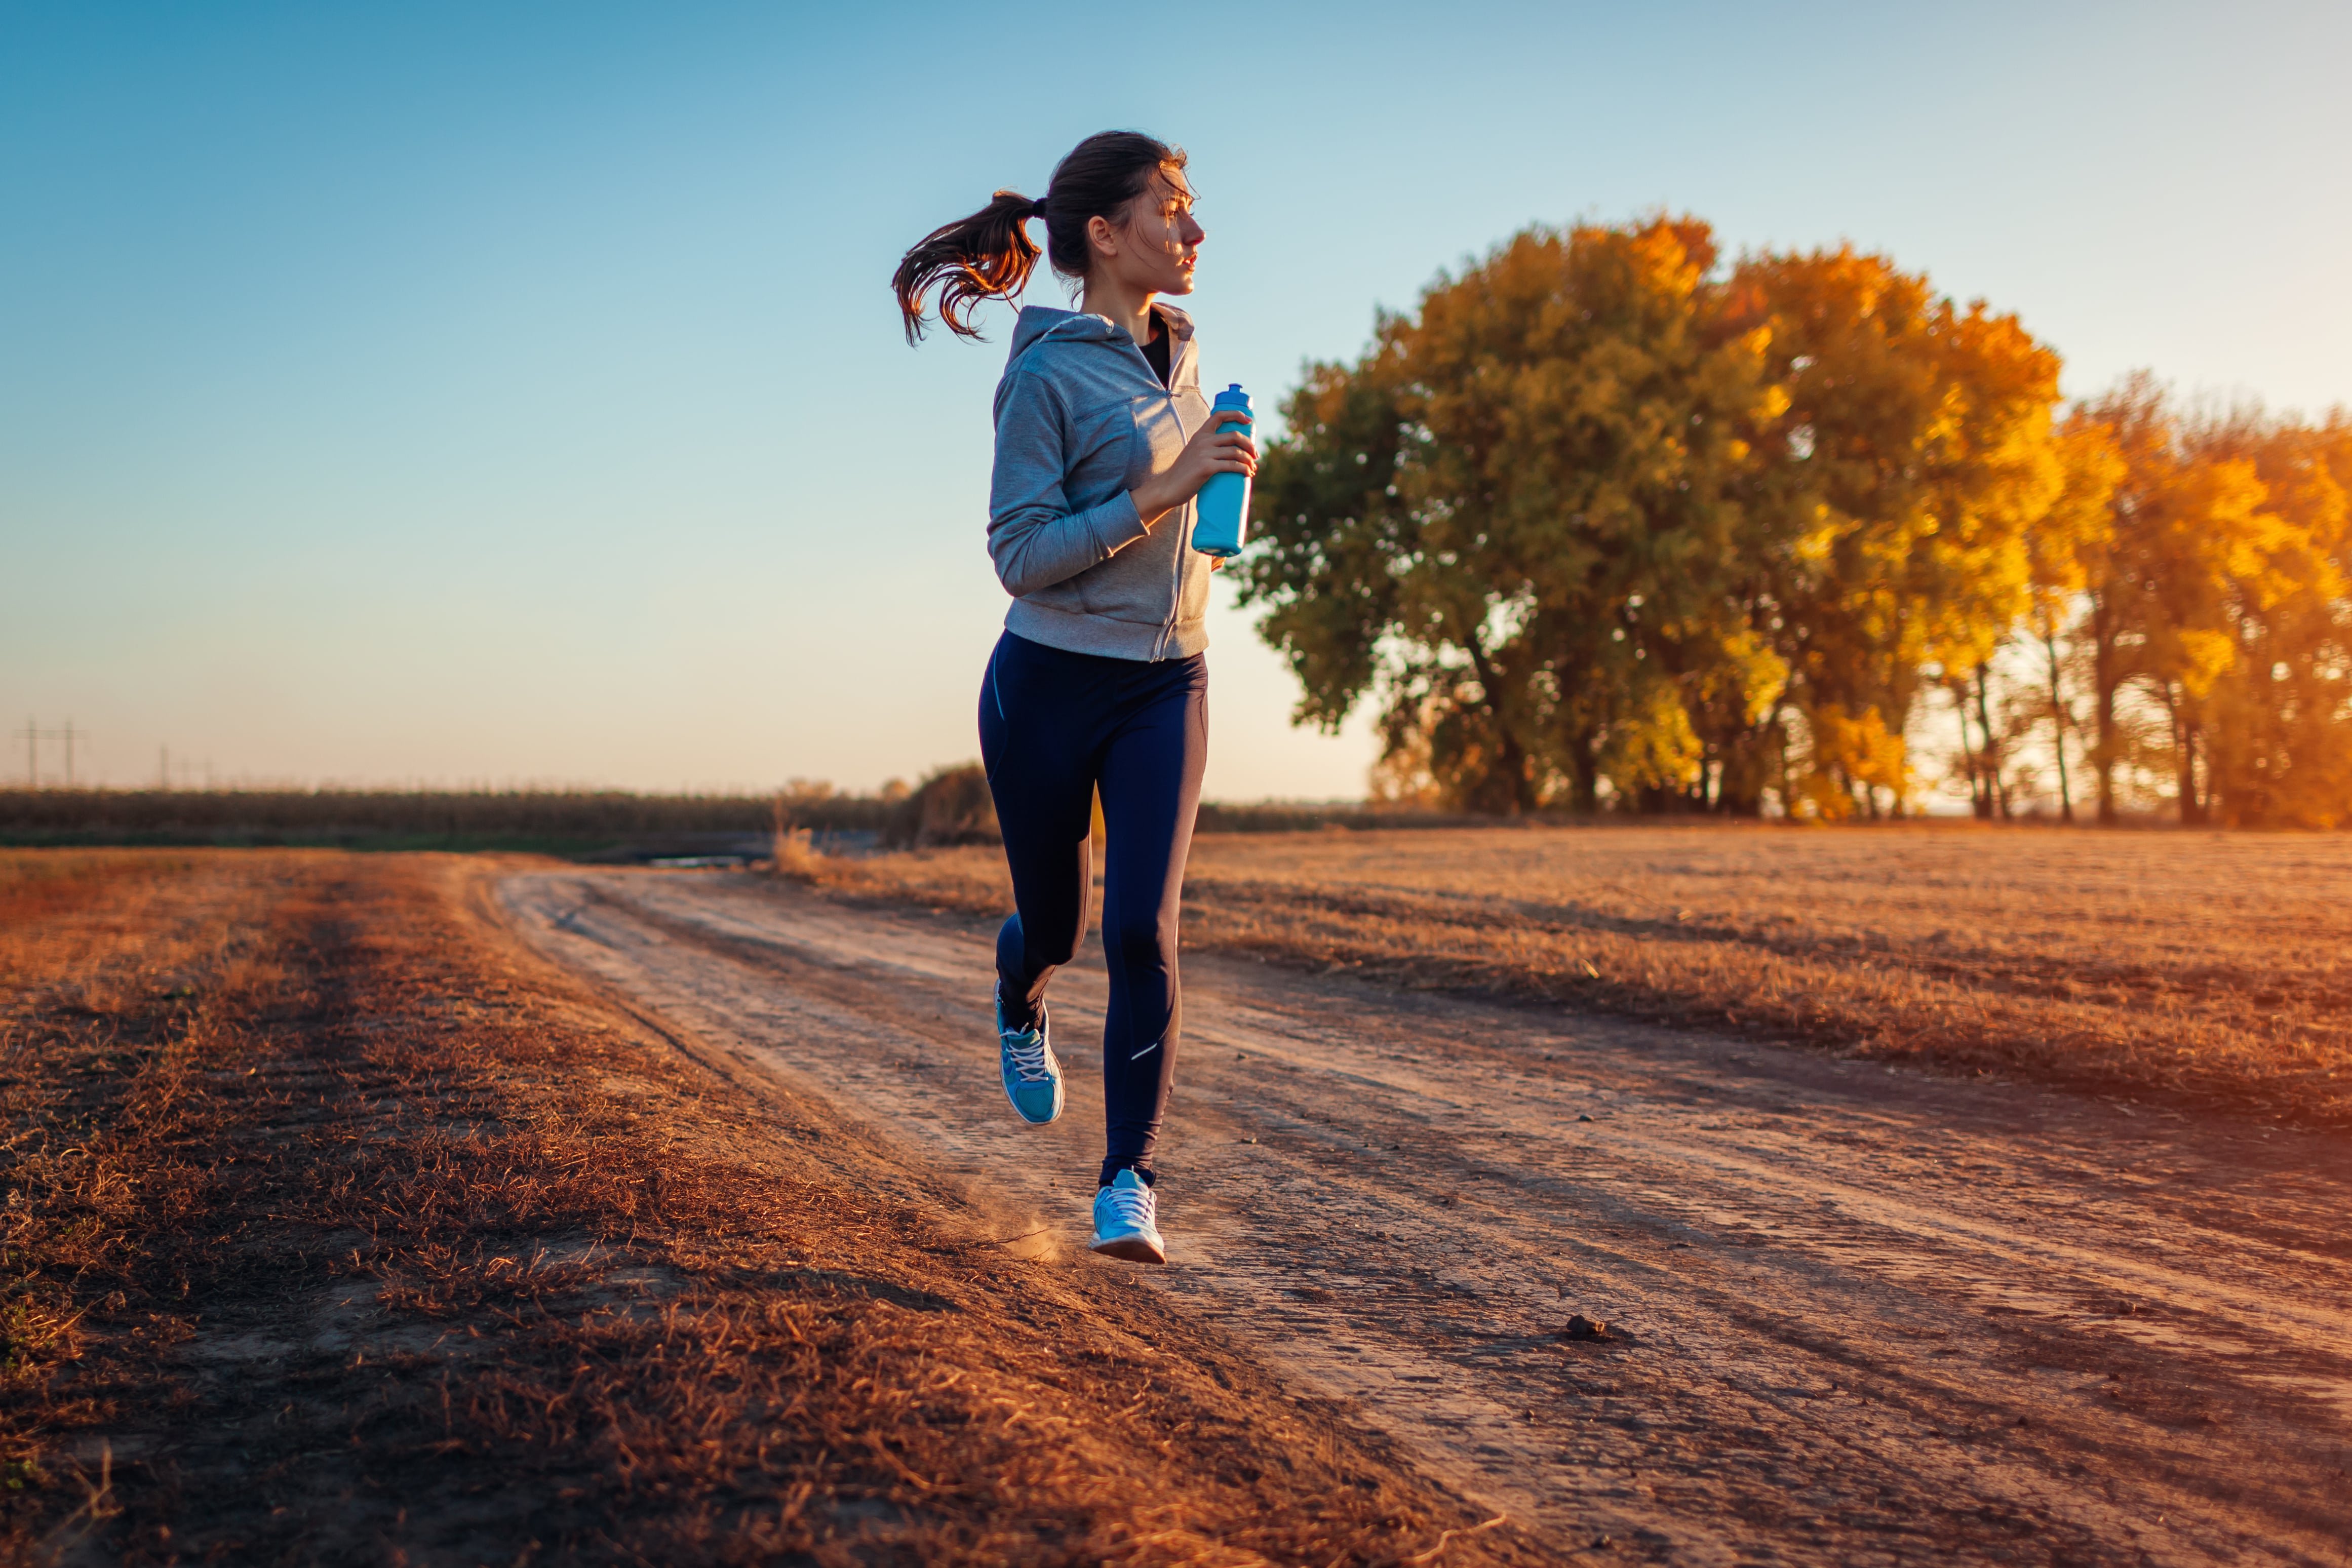 Sport helps people. Девушка бежит. Занятия спортом на свежем воздухе. Здоровый образ жизни бег. Вести активный образ жизни.